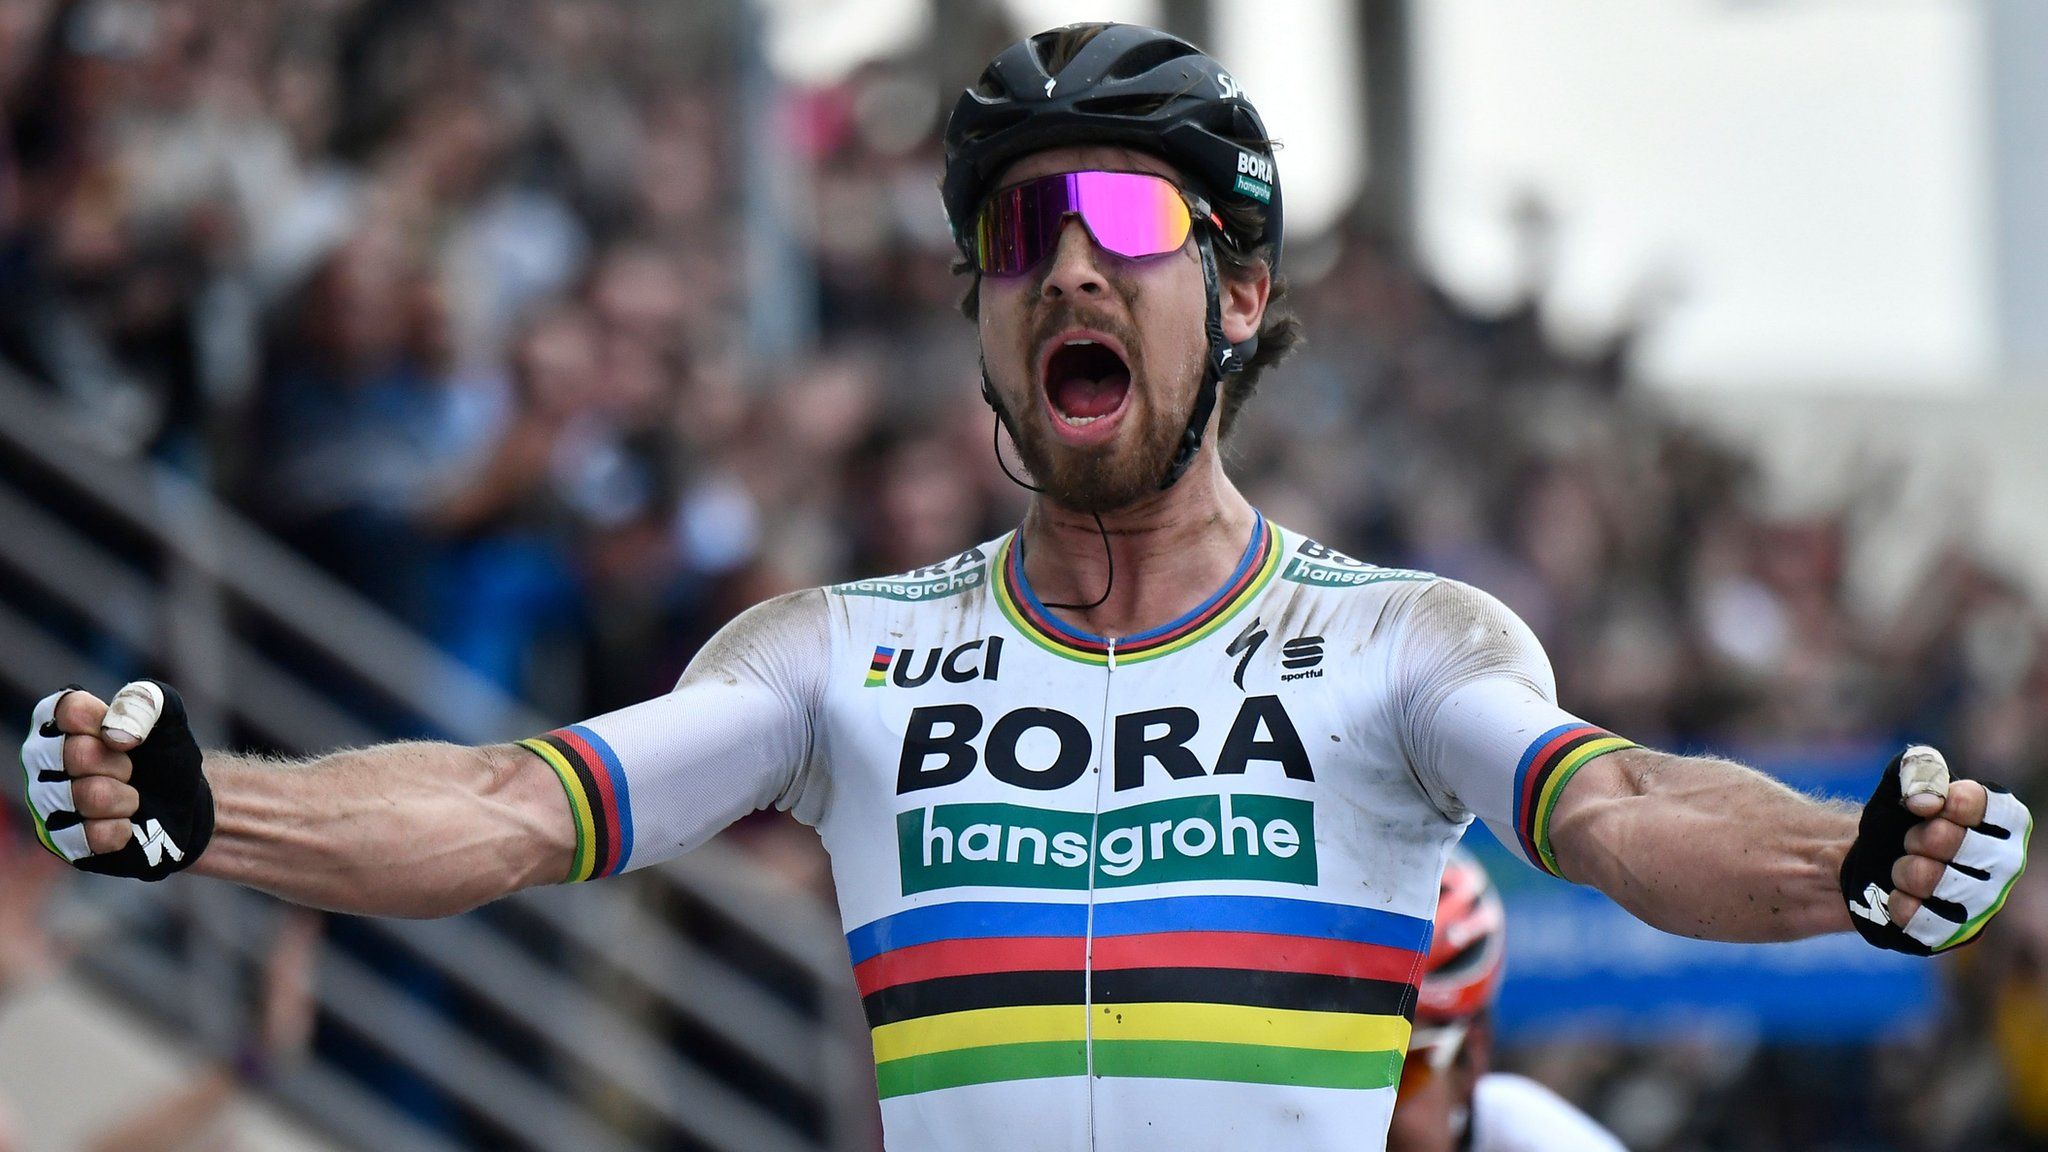 World champion Peter Sagan celebrates winning Paris-Roubaix